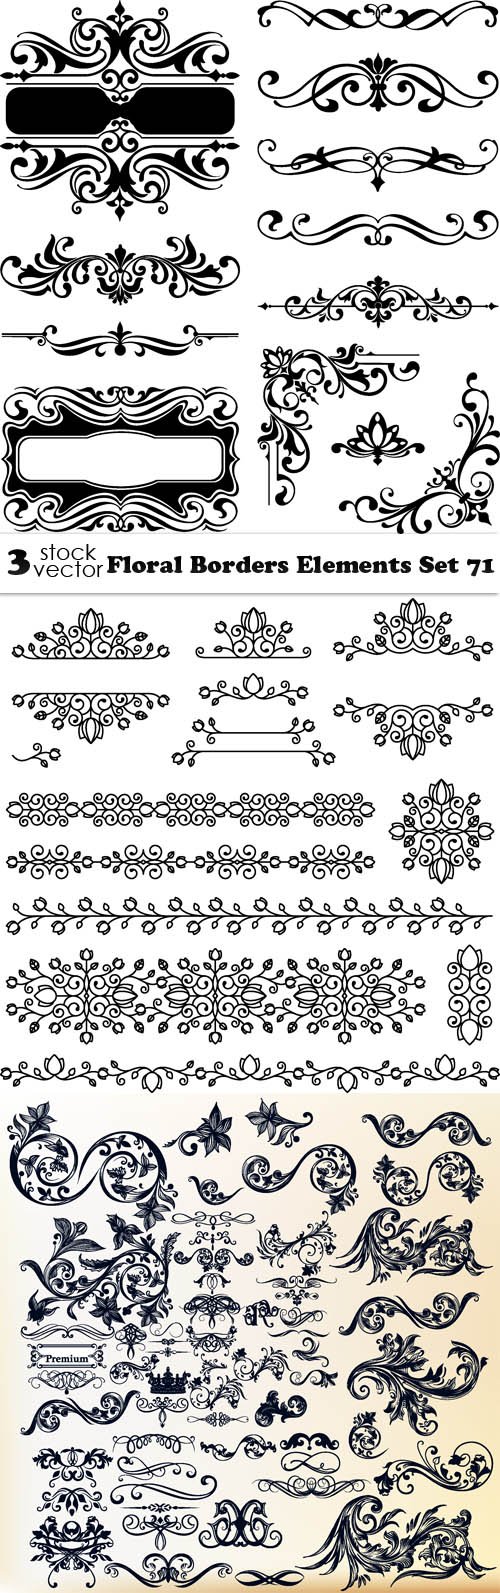 Vectors - Floral Borders Elements Set 71